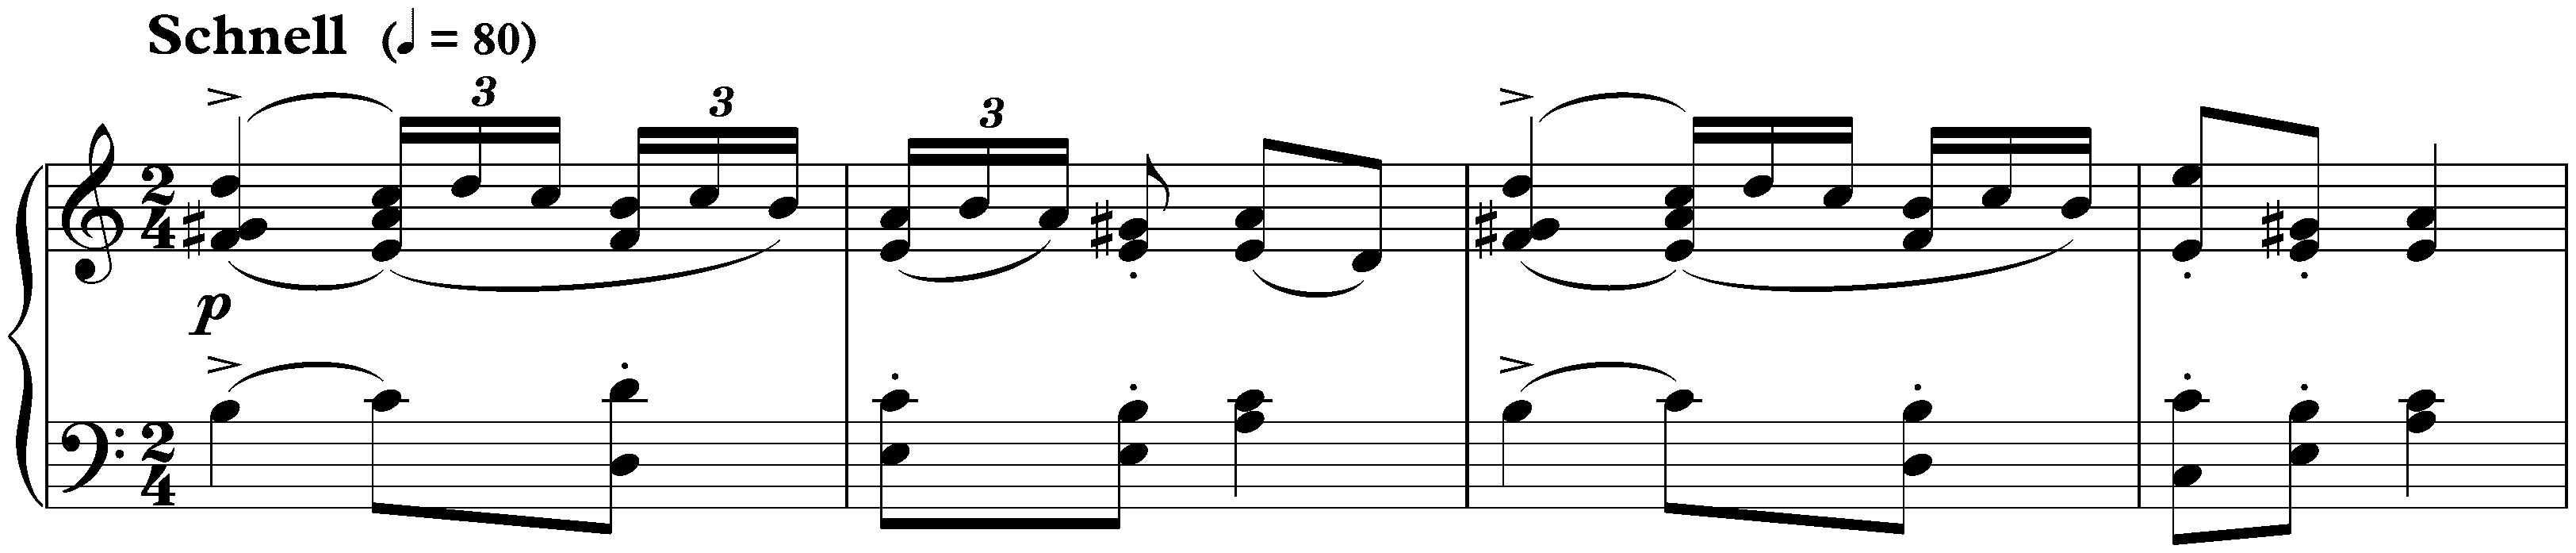 Sonate für die Jugend in C major, op. 118 no. 3; 3. Zigeunertanz: Schnell